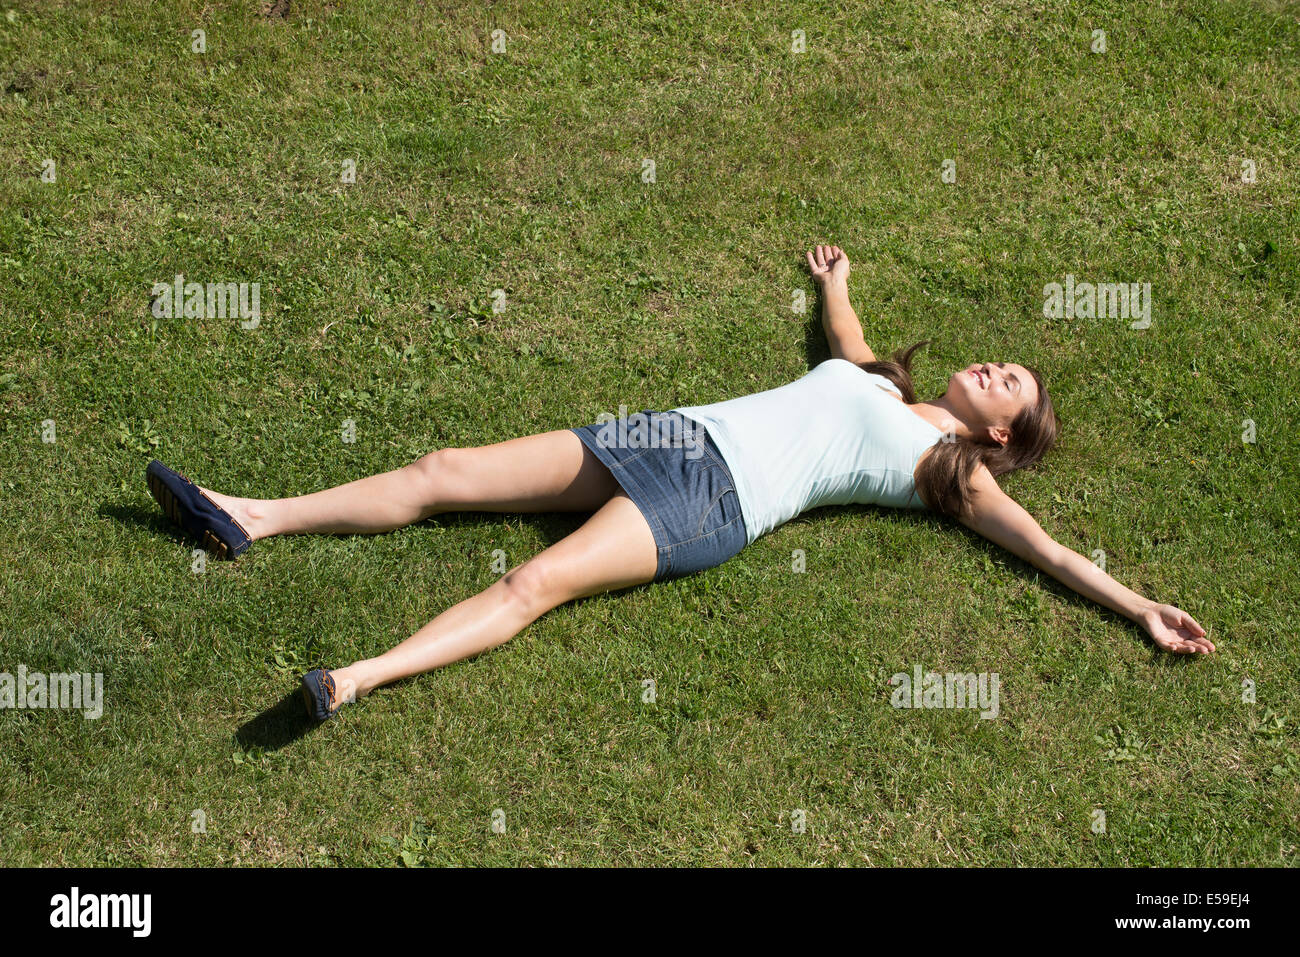 Junge Frau Tr Gt Einen Minirock Verlegung Auf Rasen Mit Arme Und Beine